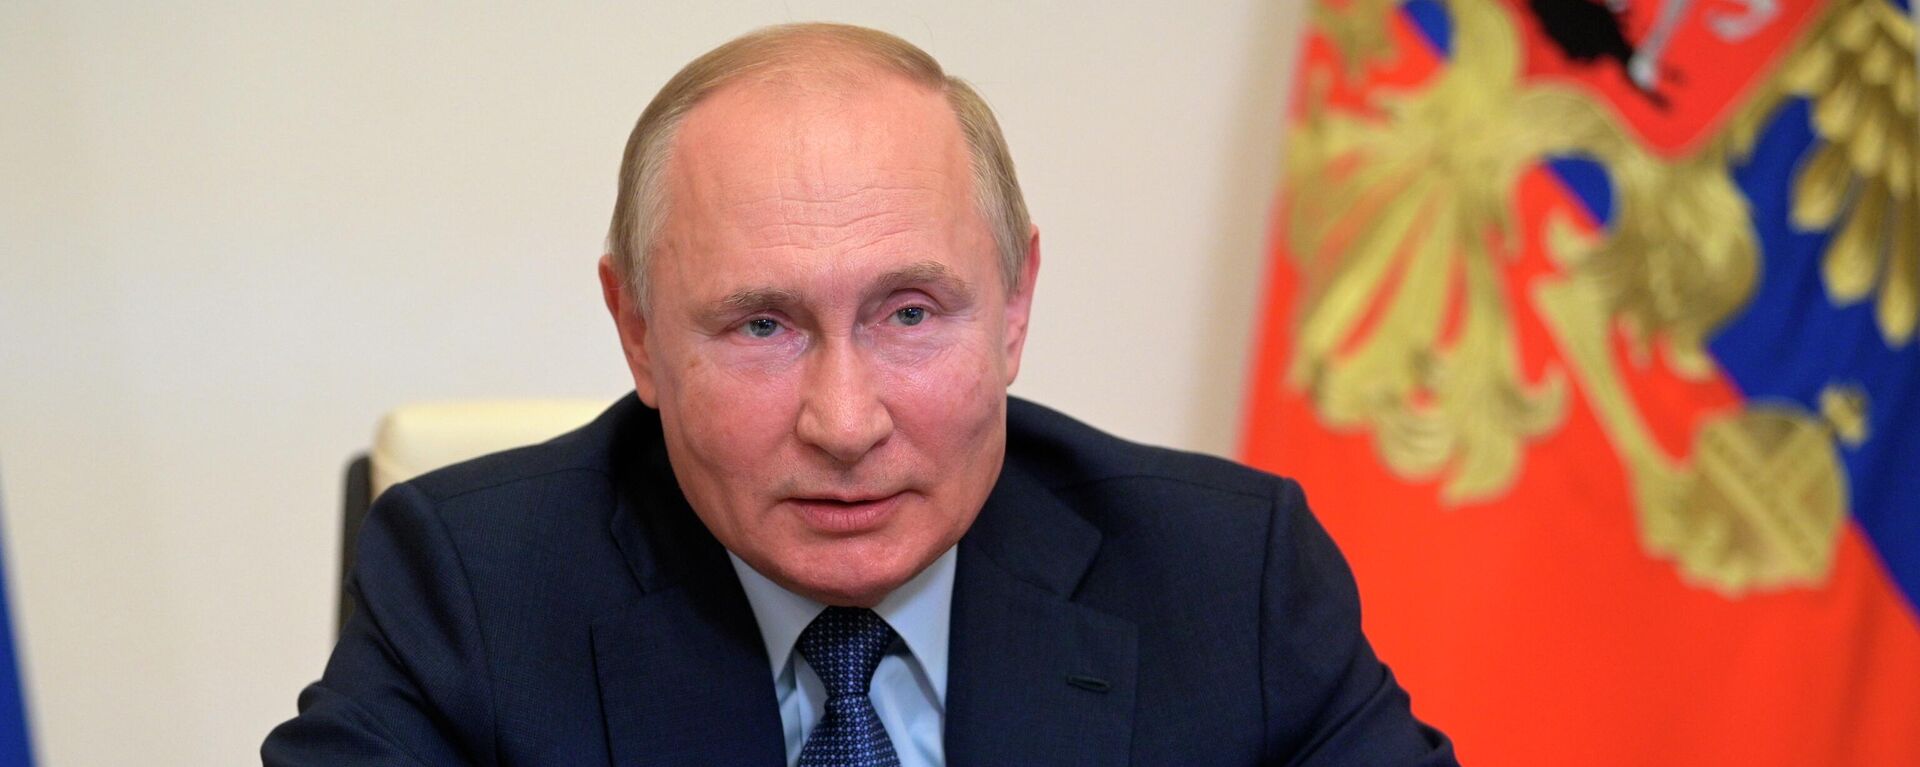 El presidente ruso, Vladimir Putin - Sputnik Mundo, 1920, 26.10.2021